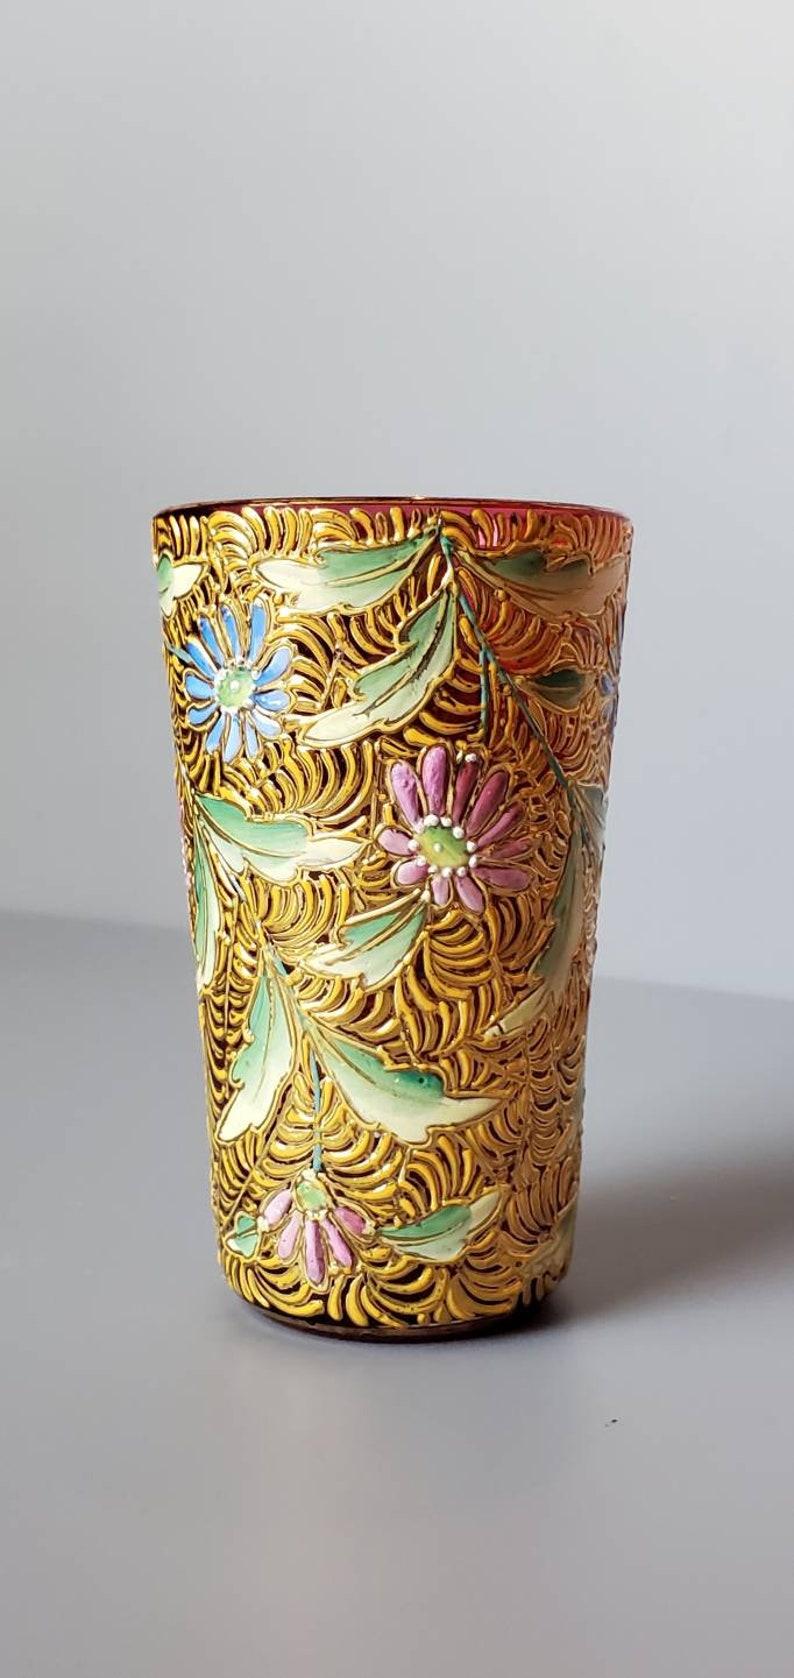 Un petit verre d'art décadent de Bohème, émaillé et doré, de couleur rouge canneberge. 

Fabriqué à la main en Bohemia (aujourd'hui République tchèque) au tournant de la fin du XIXe siècle et du début du XXe siècle, ce magnifique verre d'art